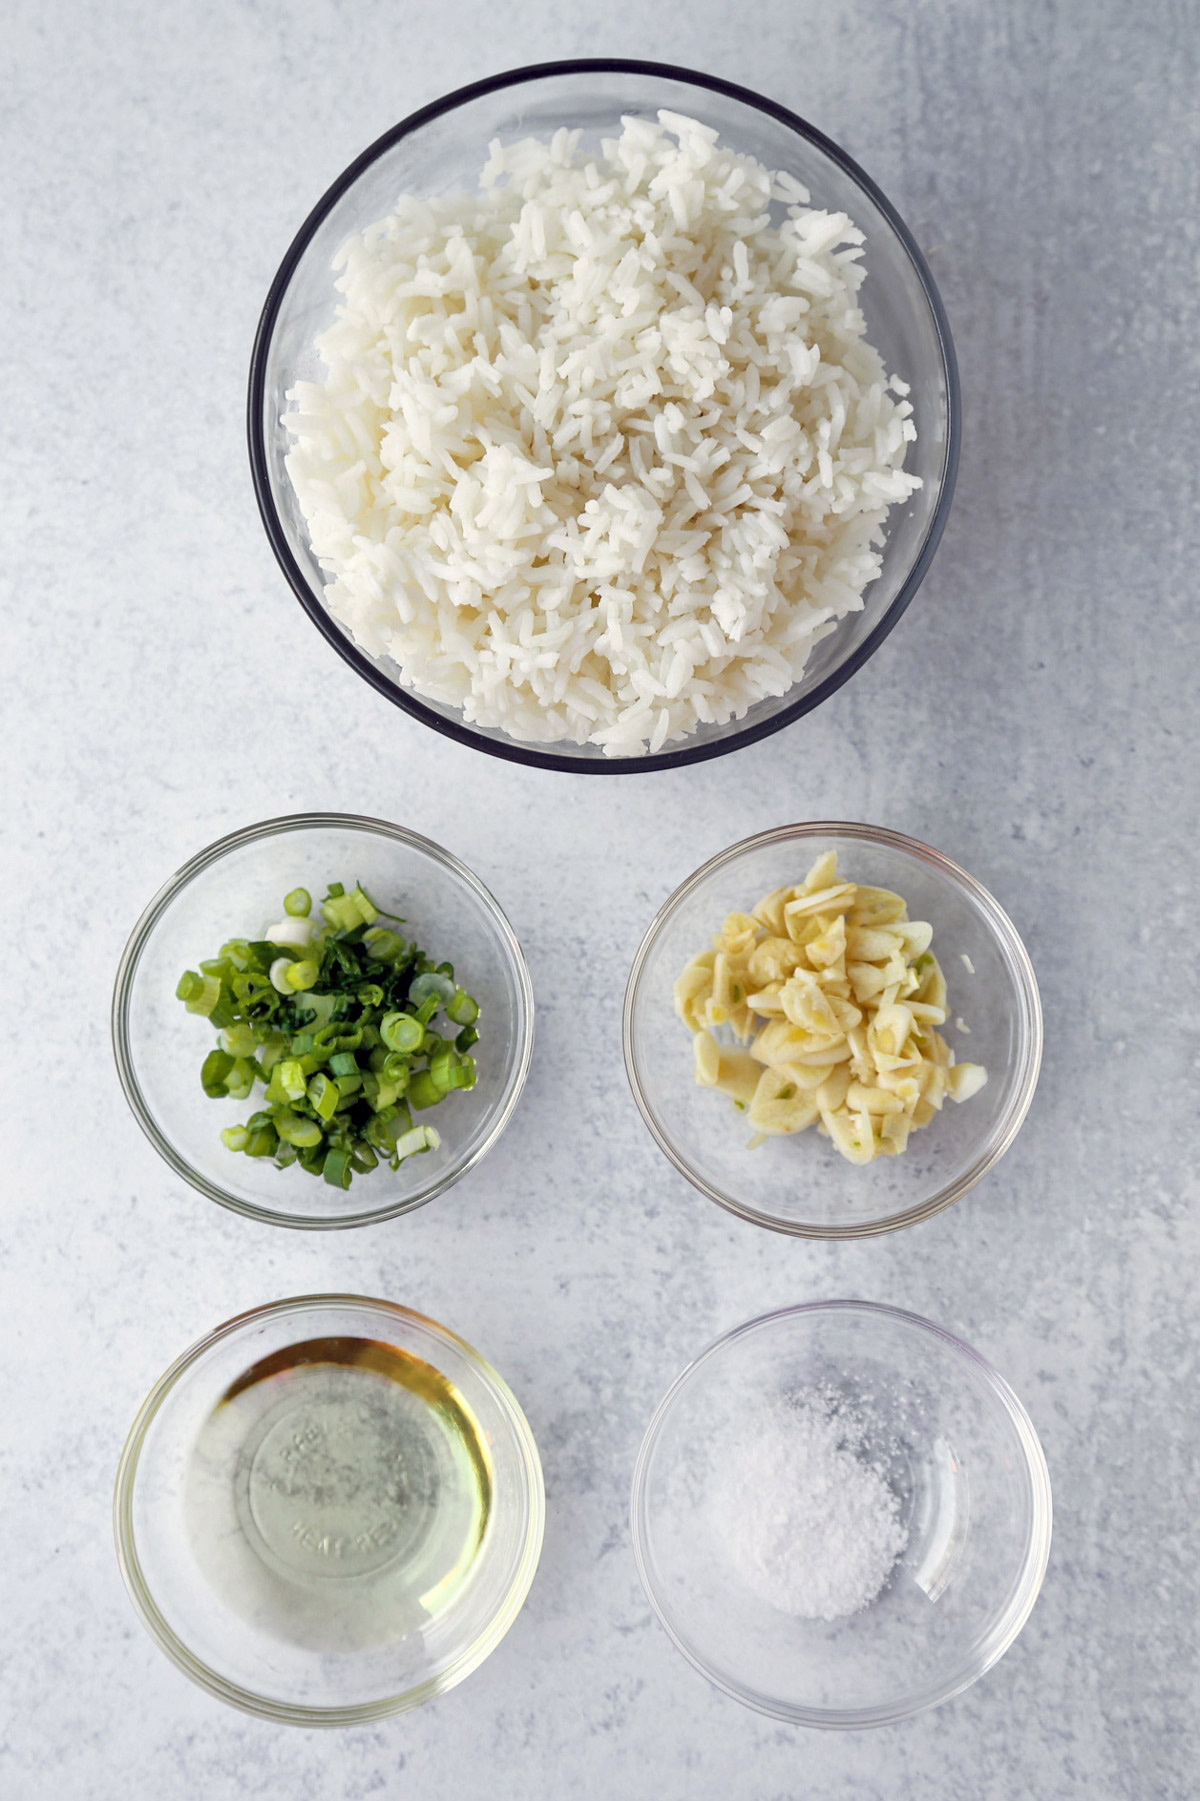 Ingredients for Filipino Garlic Rice